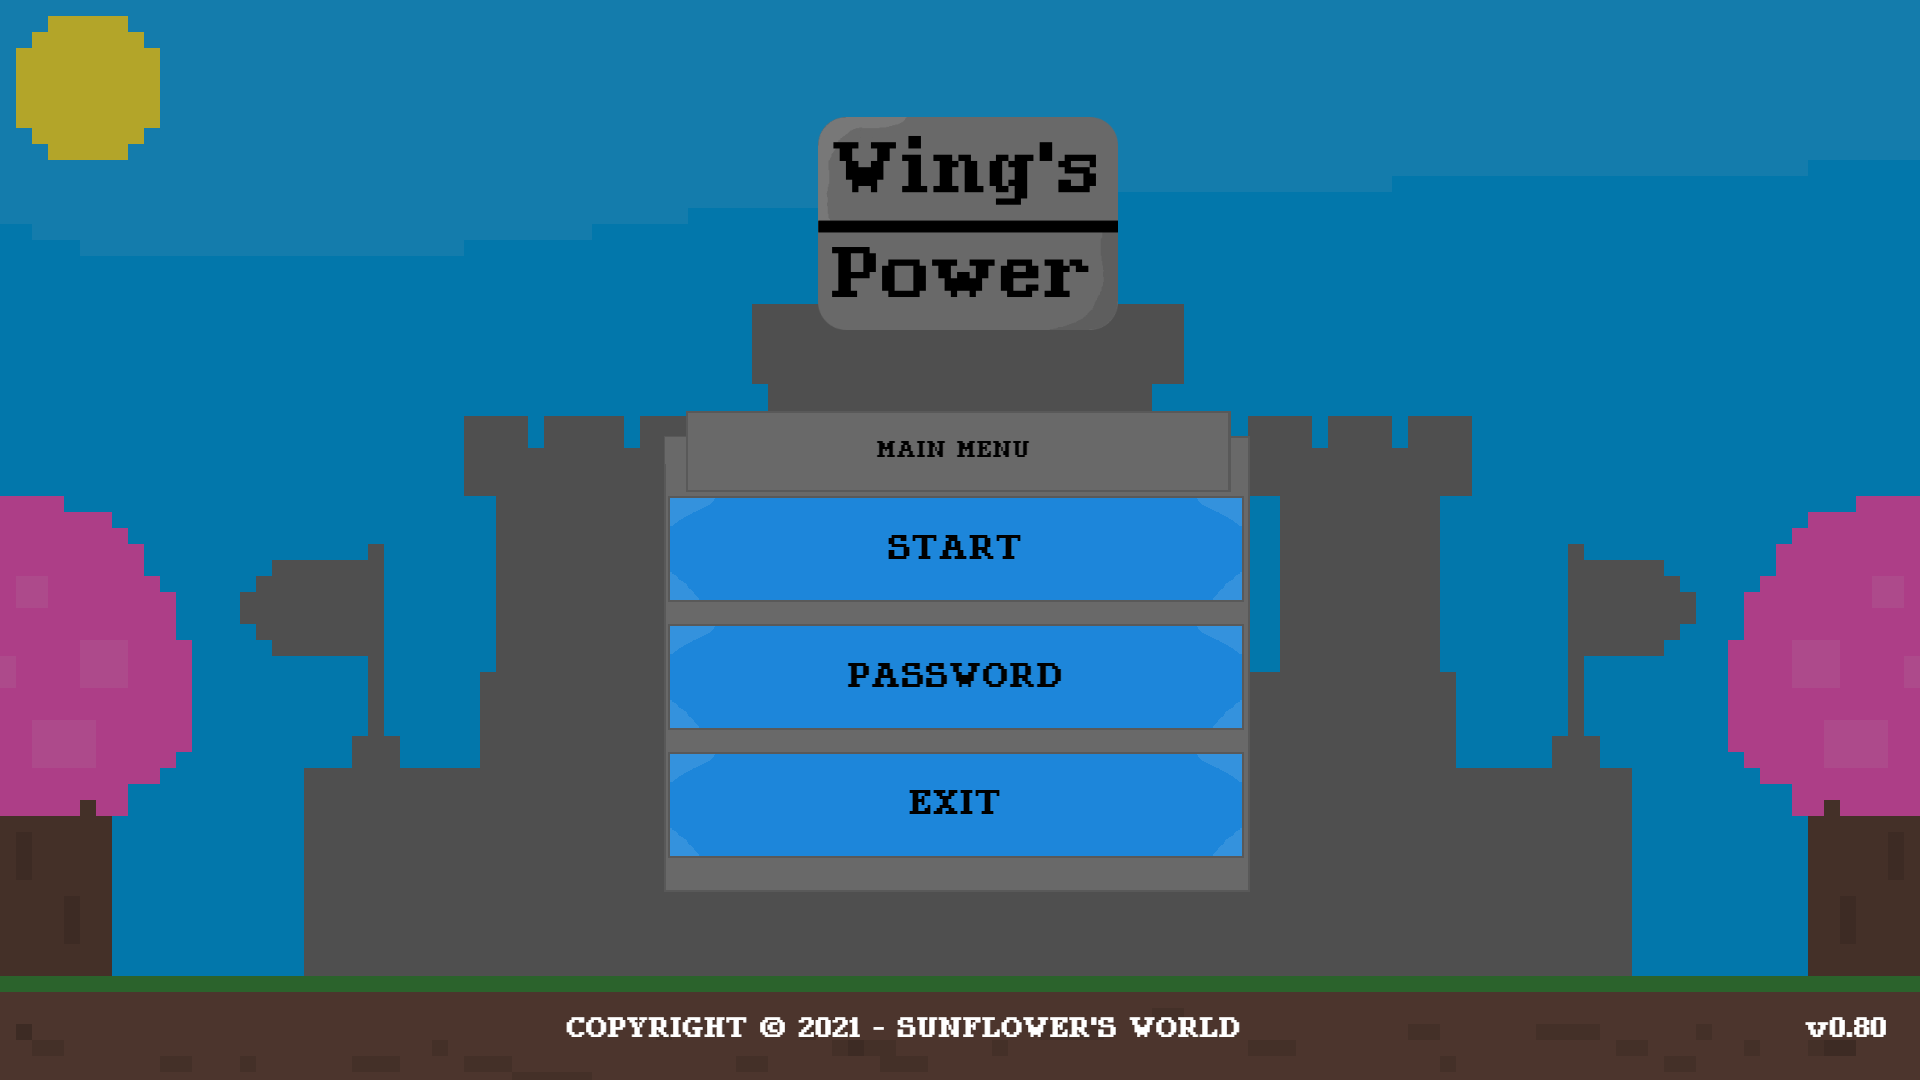 wings-power-menu-en-24.02.2021.png